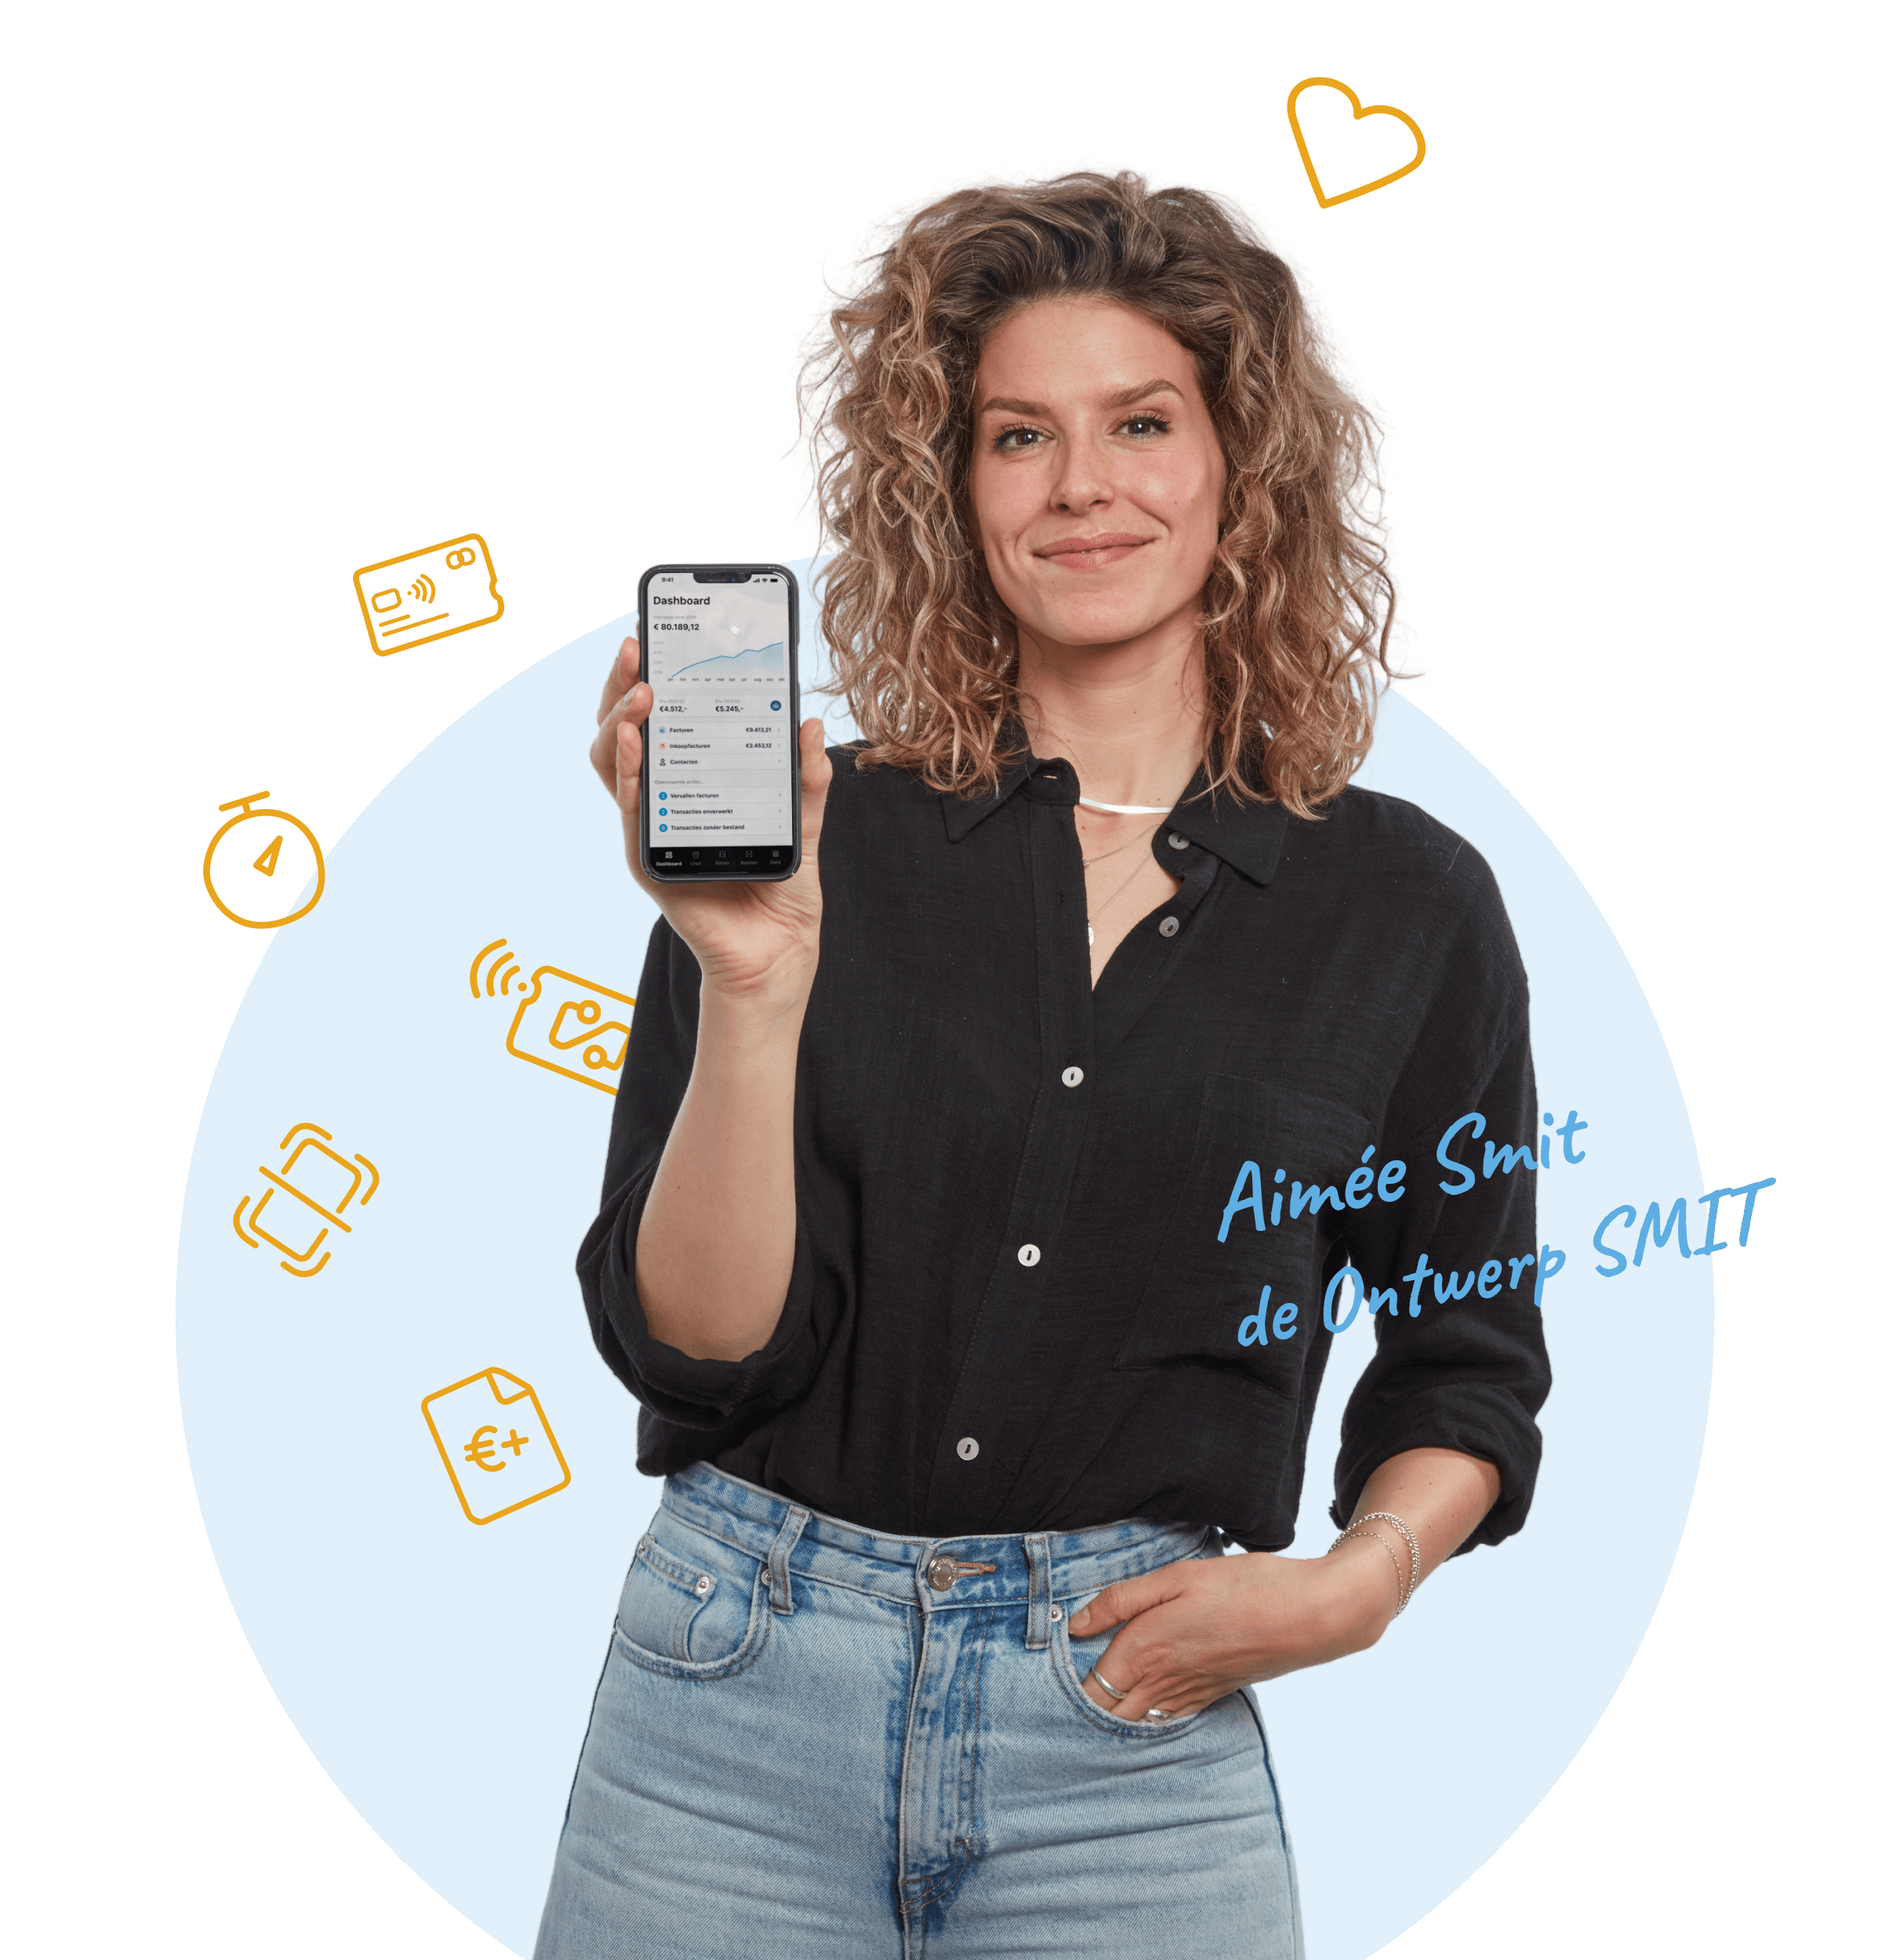 Aimée Smit (de ontwerp SMIT) presenteert de MoneyMonk app